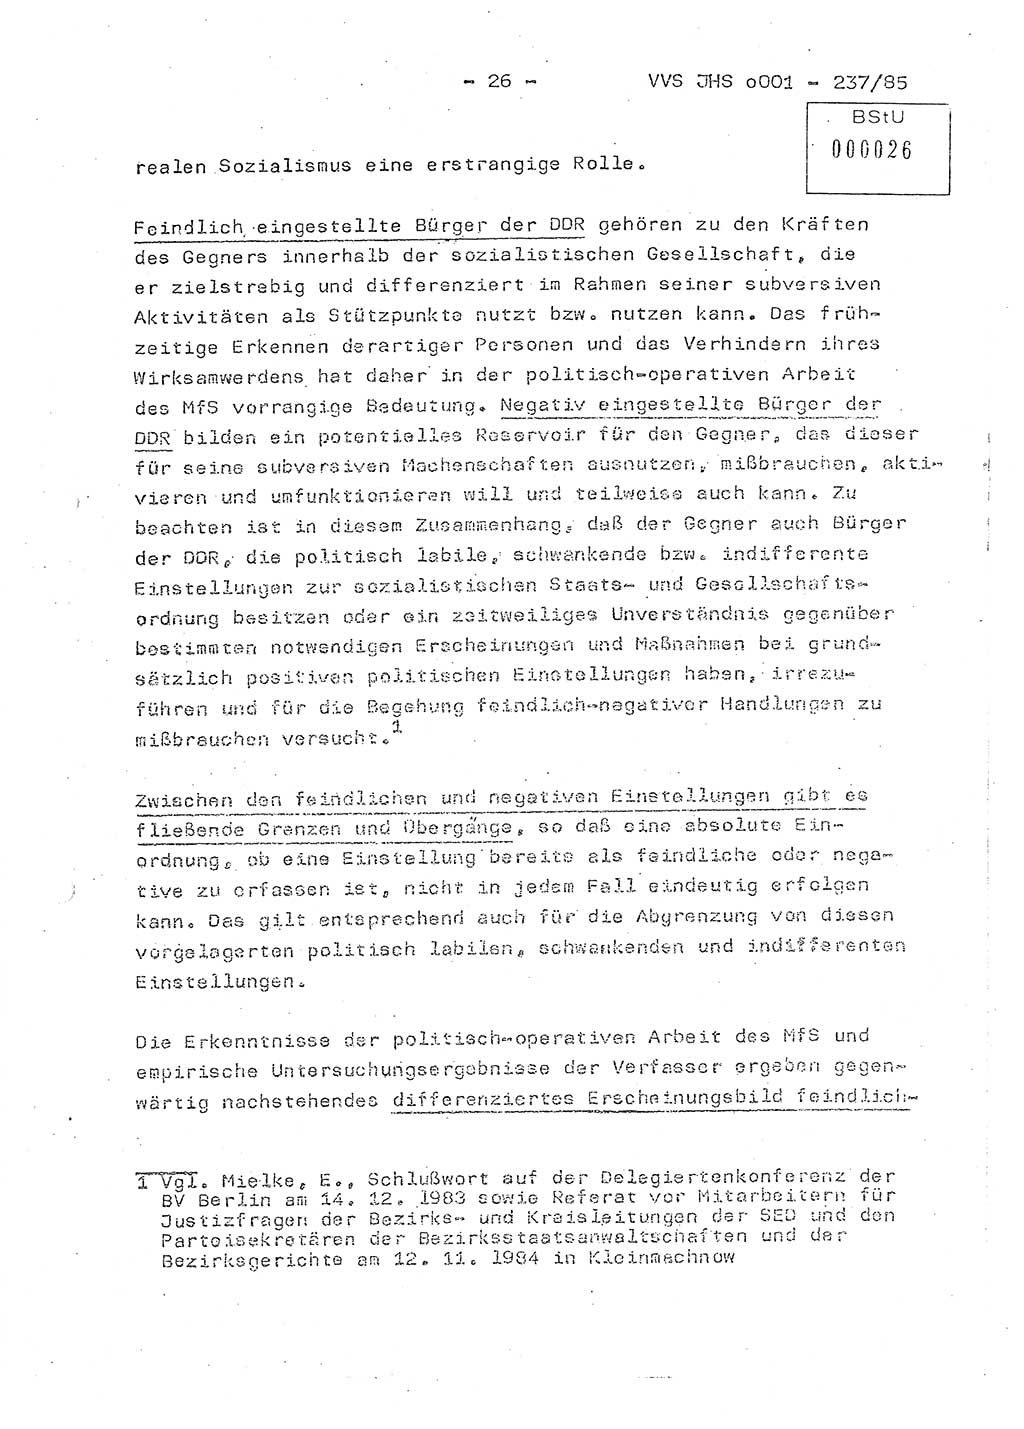 Dissertation Oberstleutnant Peter Jakulski (JHS), Oberstleutnat Christian Rudolph (HA Ⅸ), Major Horst Böttger (ZMD), Major Wolfgang Grüneberg (JHS), Major Albert Meutsch (JHS), Ministerium für Staatssicherheit (MfS) [Deutsche Demokratische Republik (DDR)], Juristische Hochschule (JHS), Vertrauliche Verschlußsache (VVS) o001-237/85, Potsdam 1985, Seite 26 (Diss. MfS DDR JHS VVS o001-237/85 1985, S. 26)